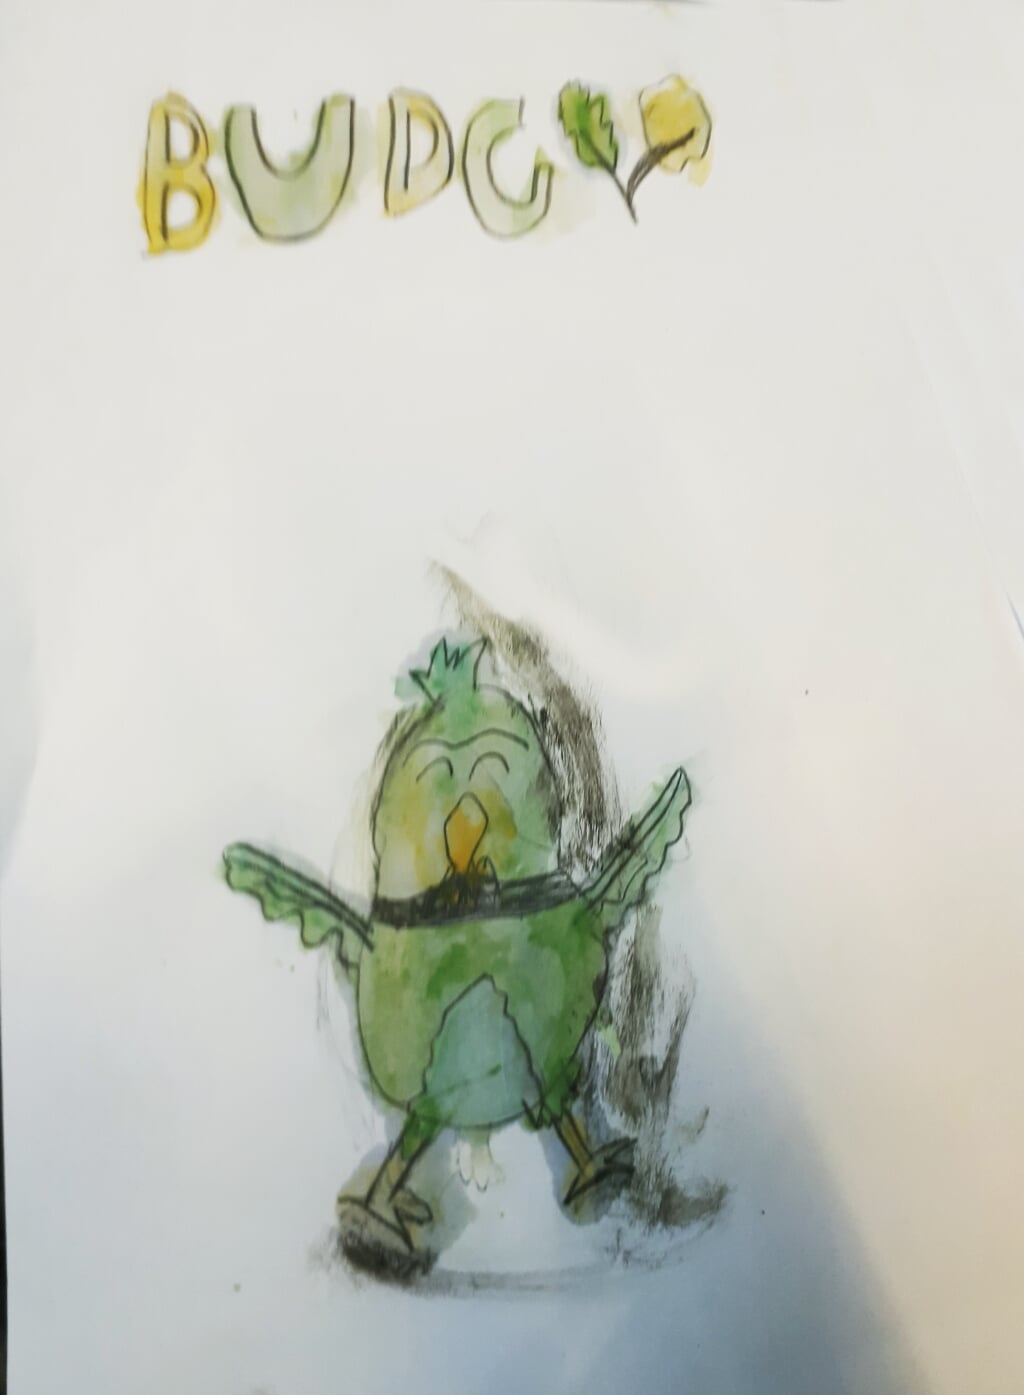 Anouk maakte deze prachtige tekening van Budgy in slechts 20 minuten.